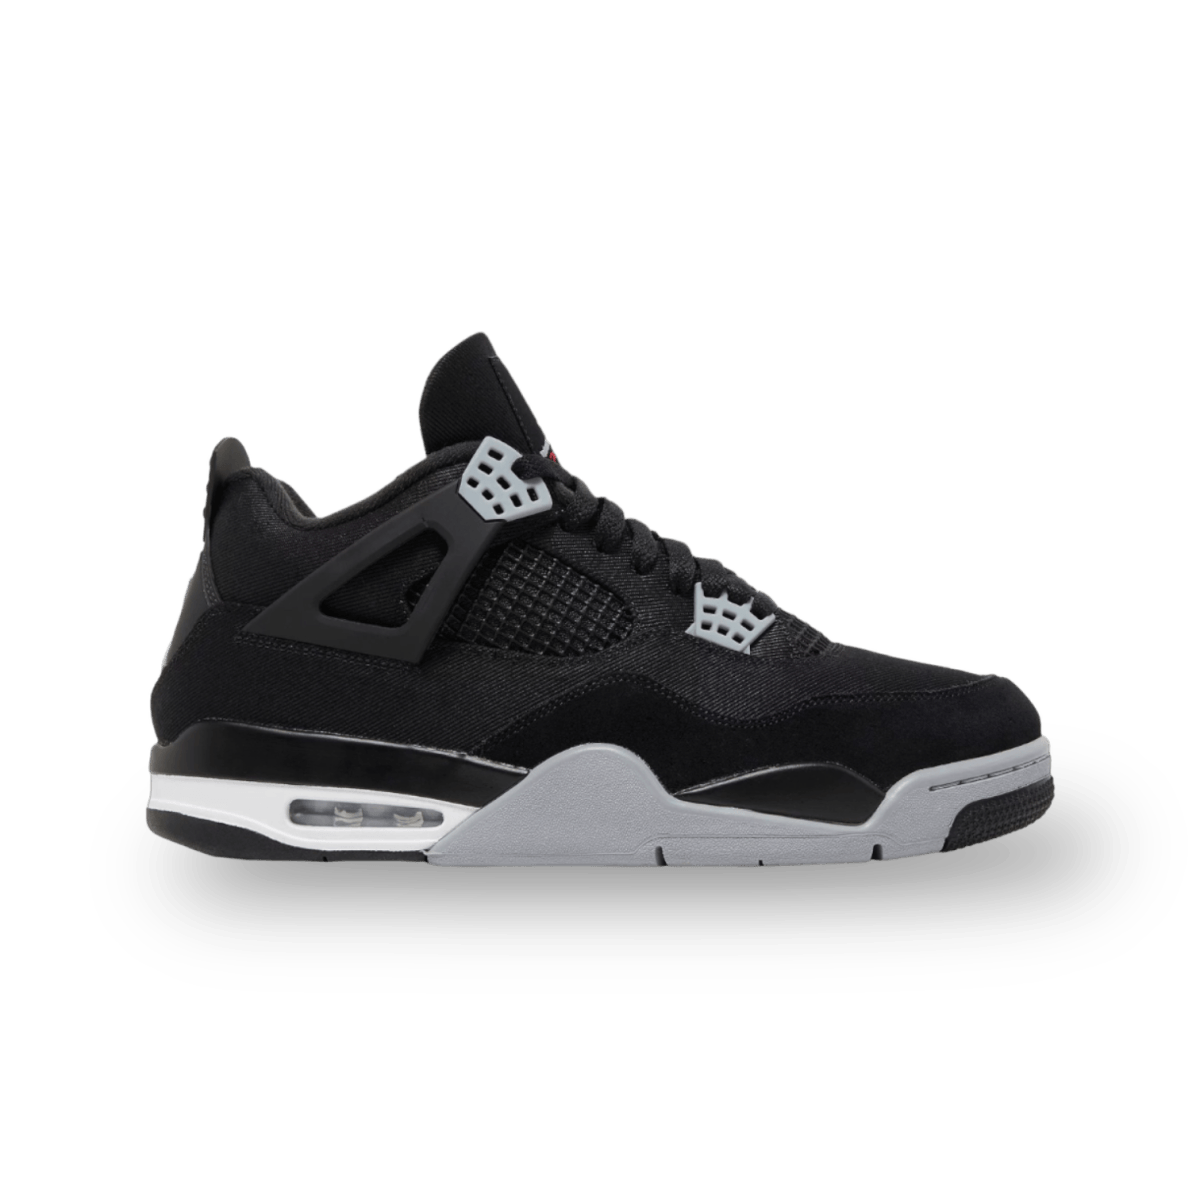 Jordan 4 Retro Black Canvas - Mid Sneaker - Jordan - Jawns on Fire - sneakers